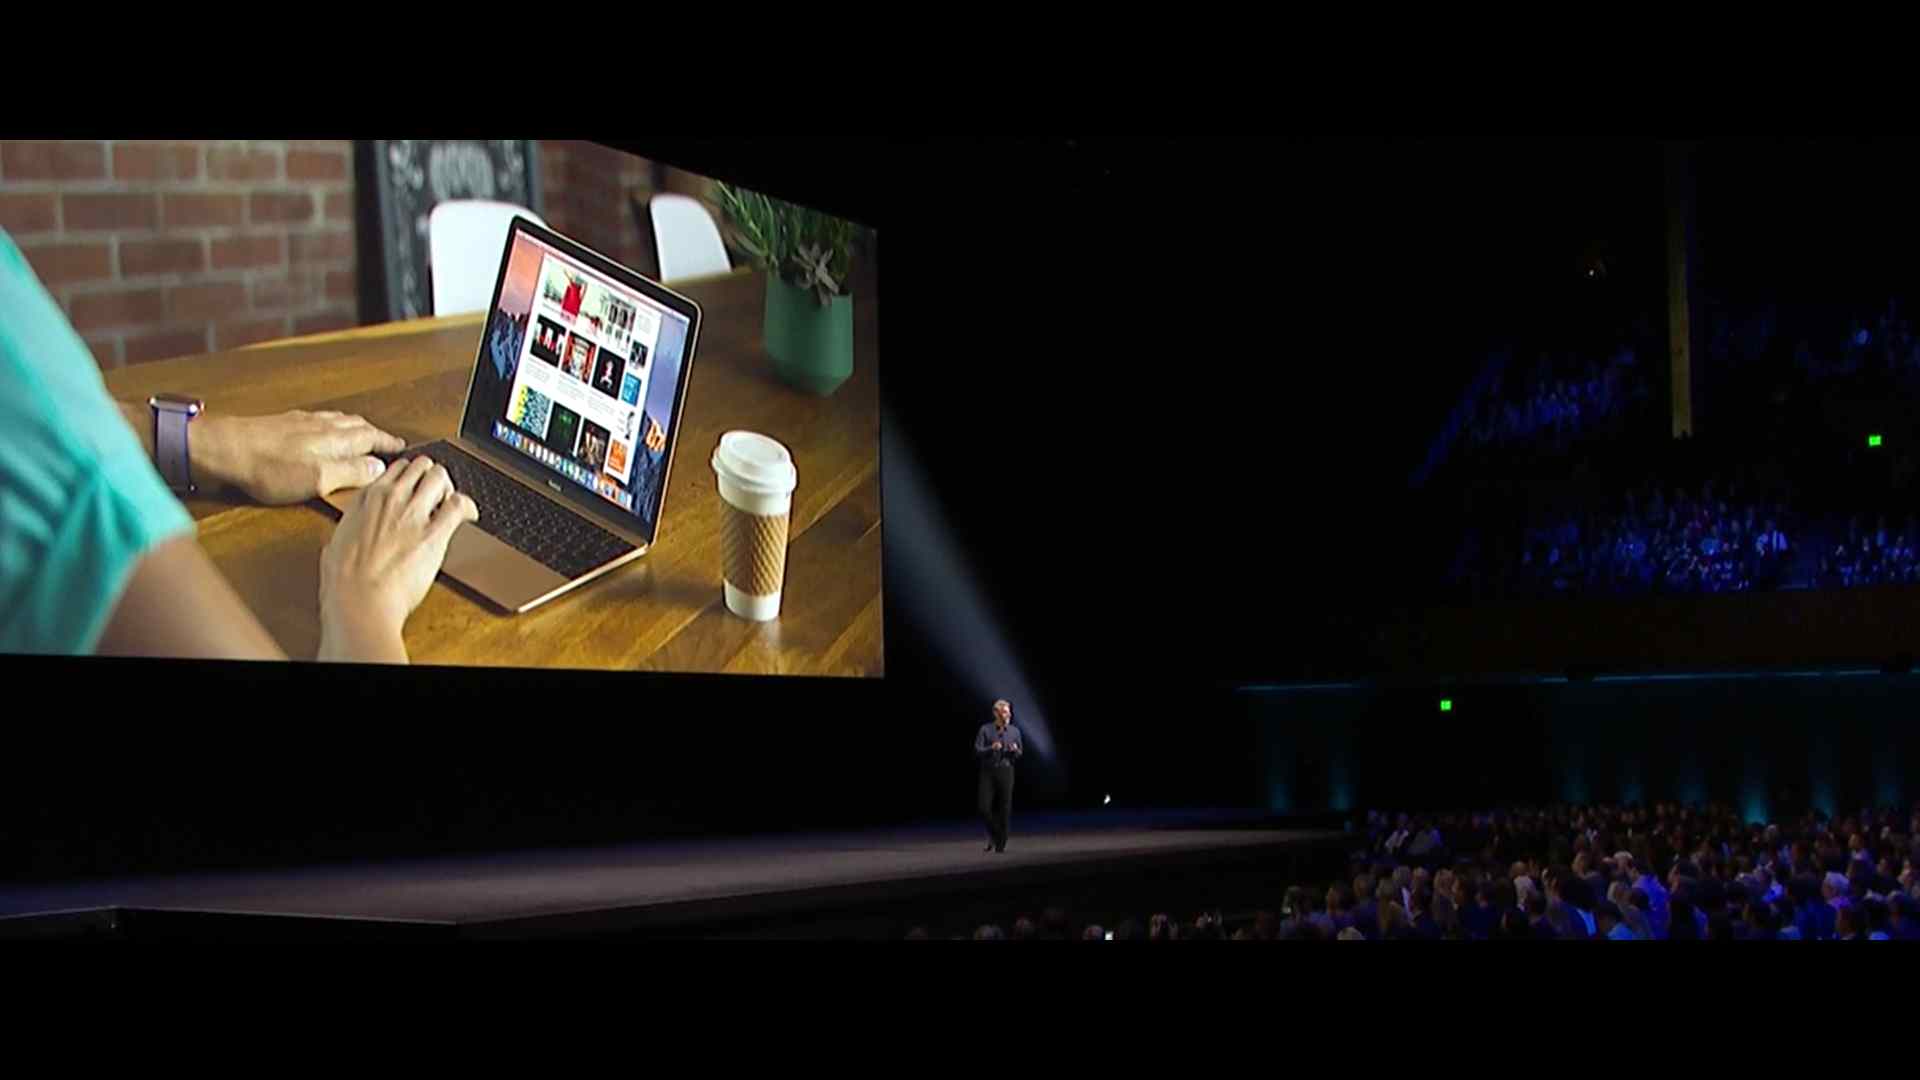 蘋果在 WWDC 2016 開發者大會上，發佈了新一代 Mac 作業系統，不再叫 OS X，改名為 macOS Sierra，加入了不少新功能。同時亦為 watchOS、tvOS 及 iOS 系統進行全面更新！